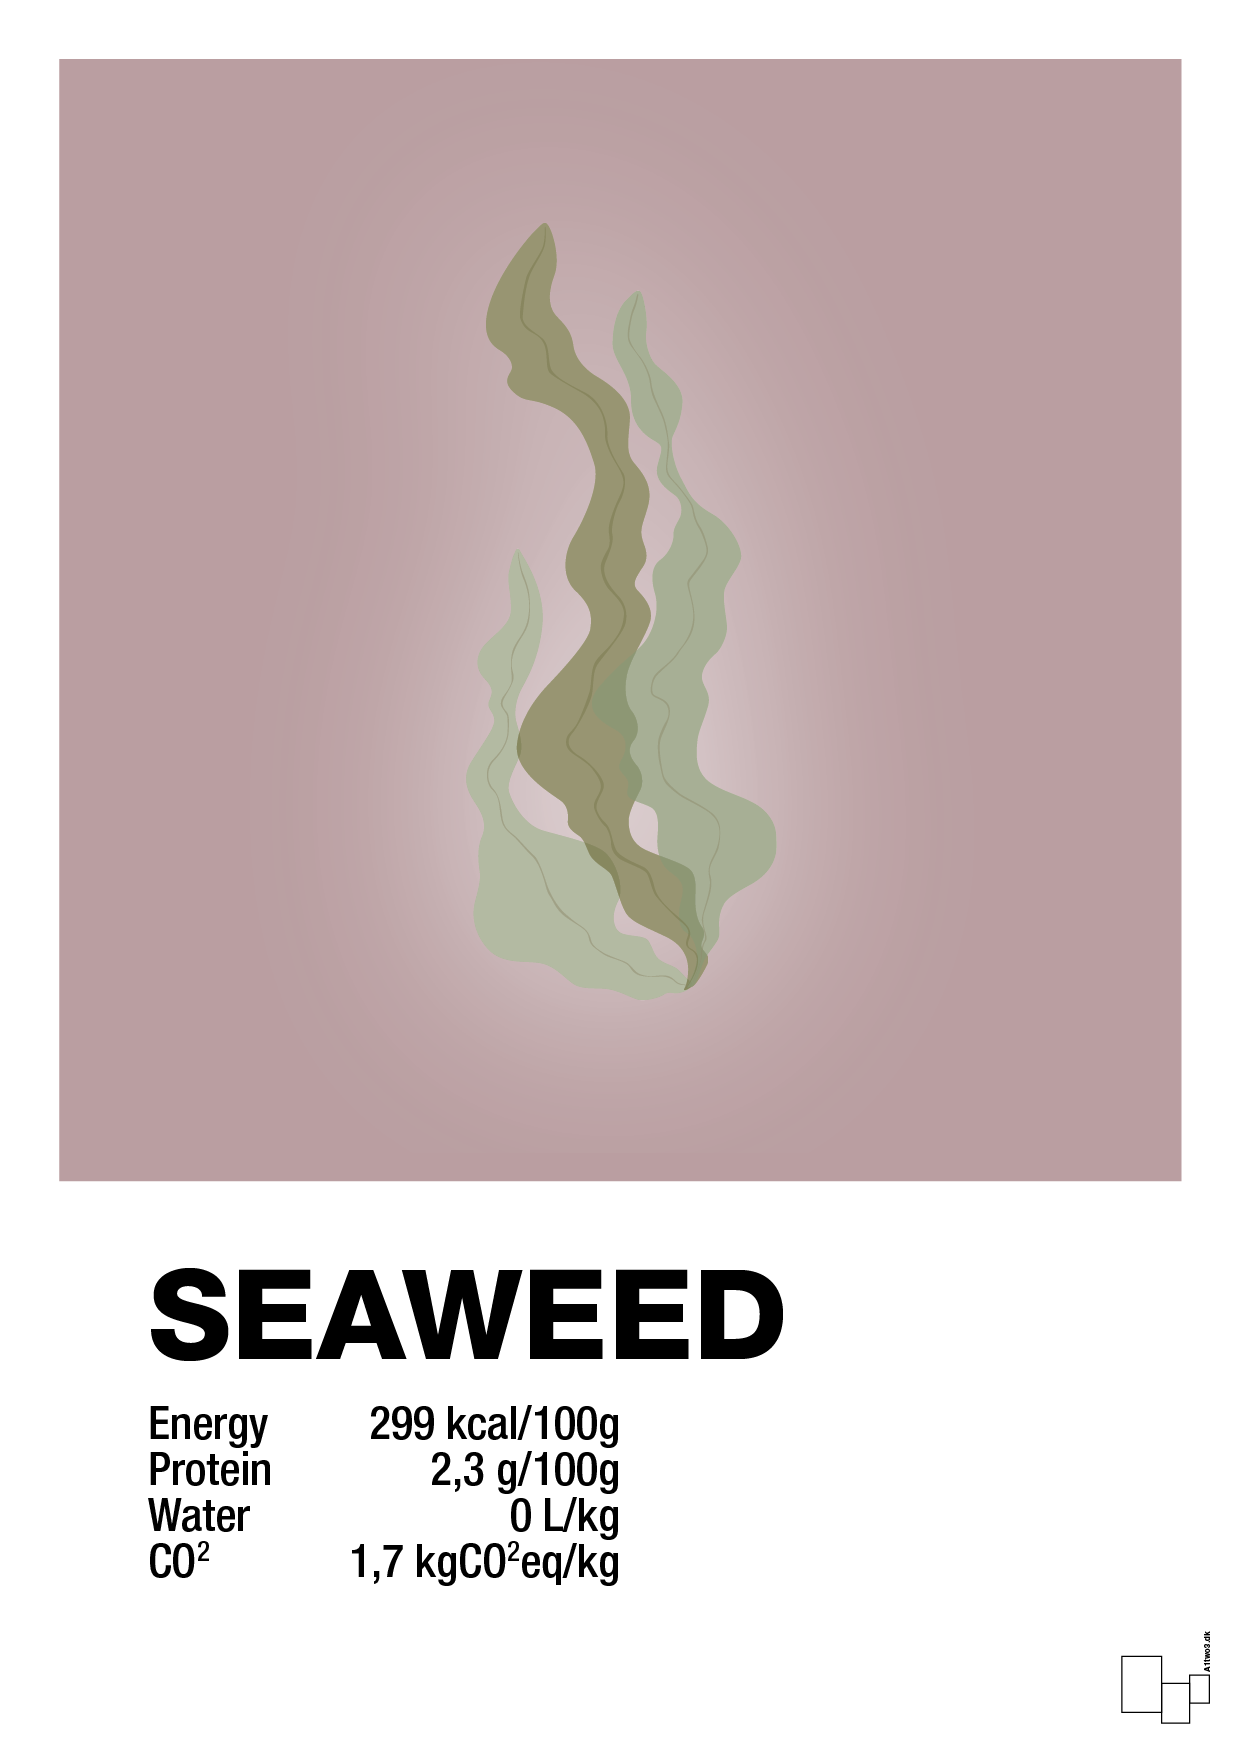 seaweed nutrition og miljø - Plakat med Mad & Drikke i Light Rose